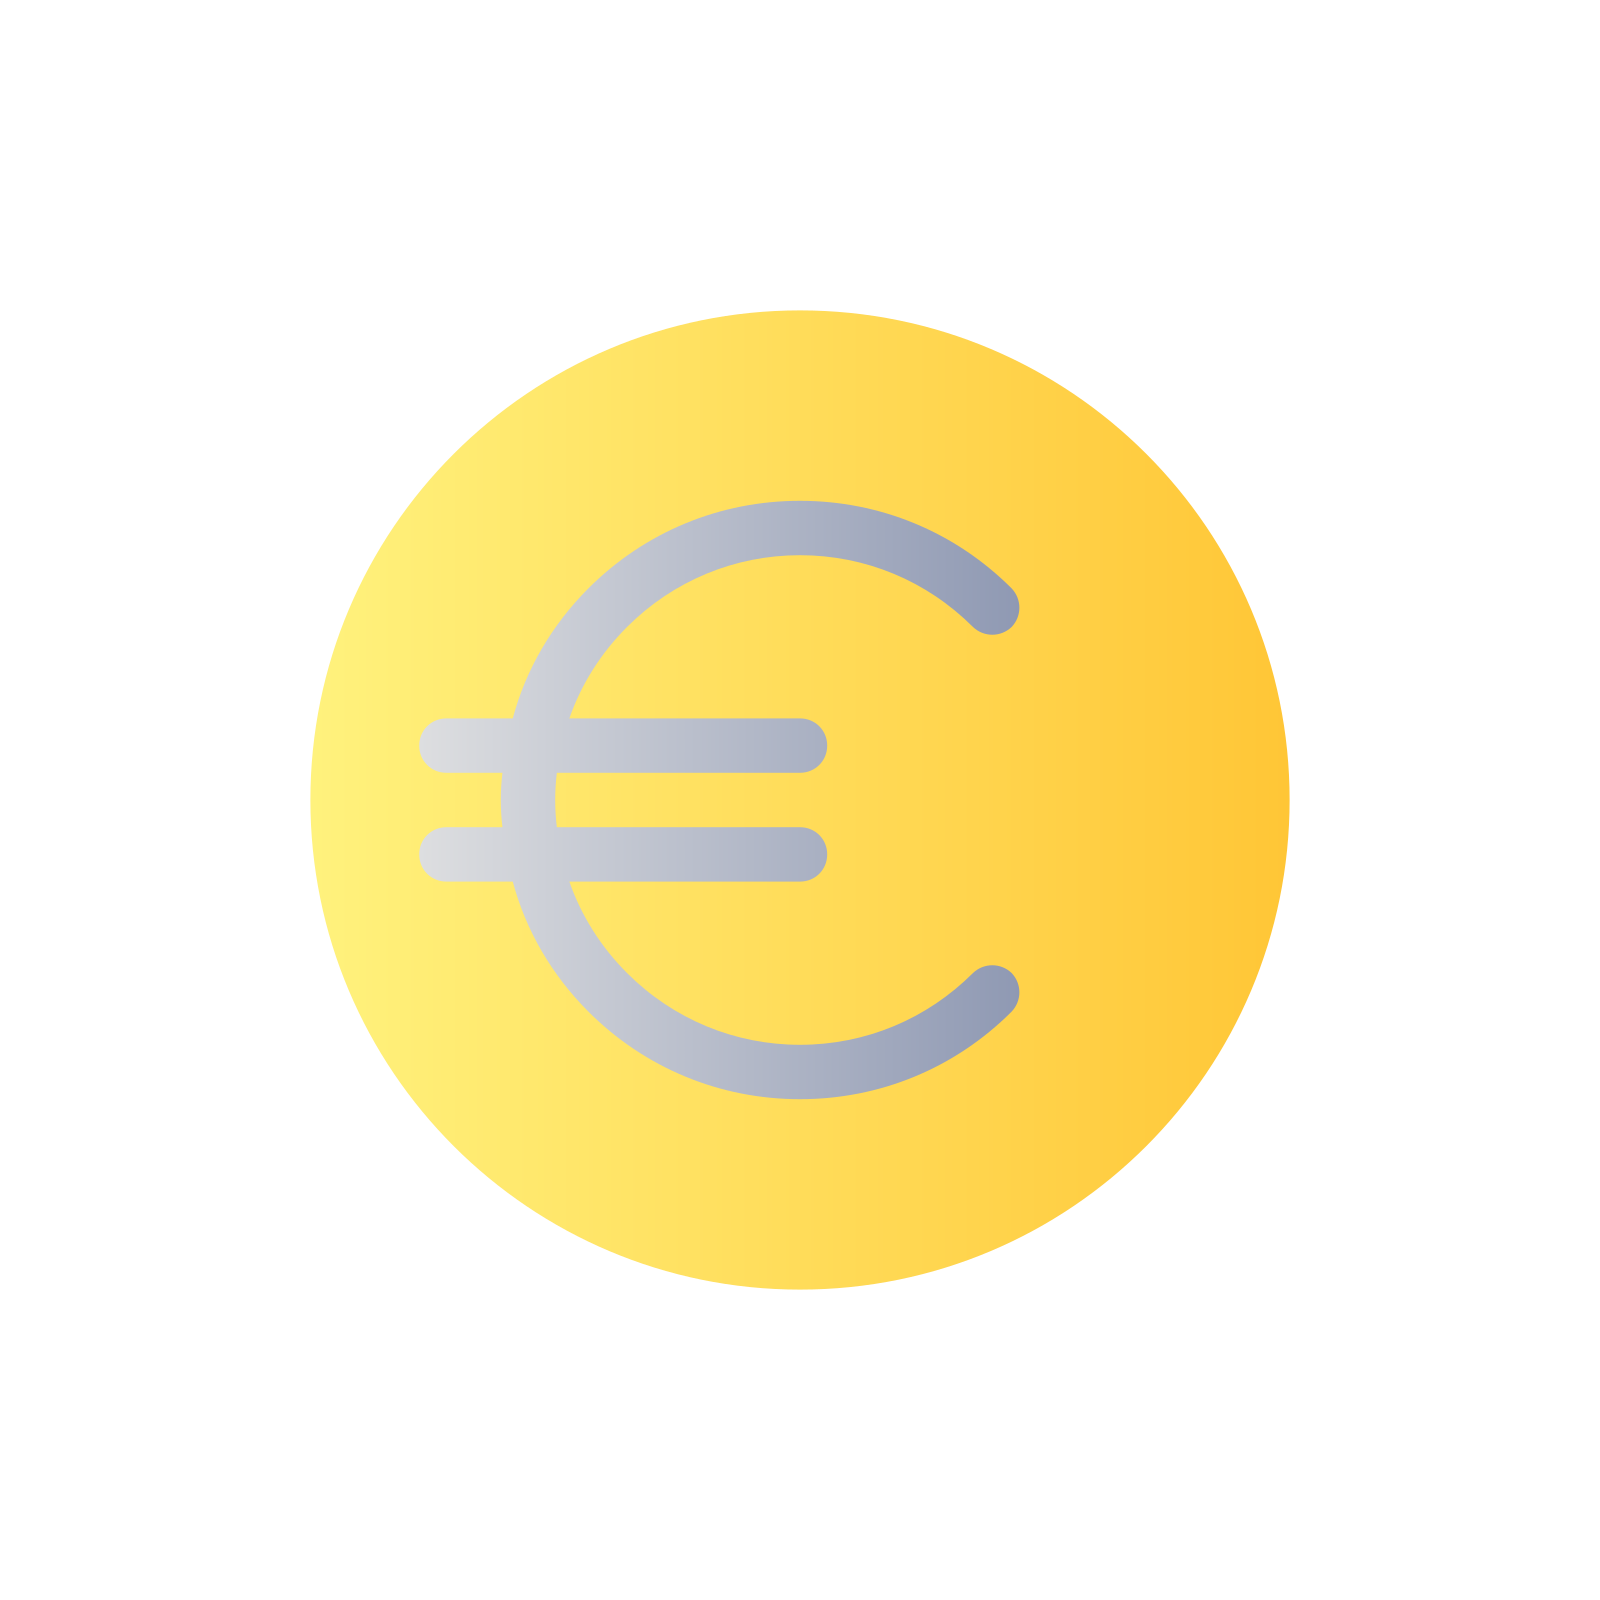 Euro moneta icon